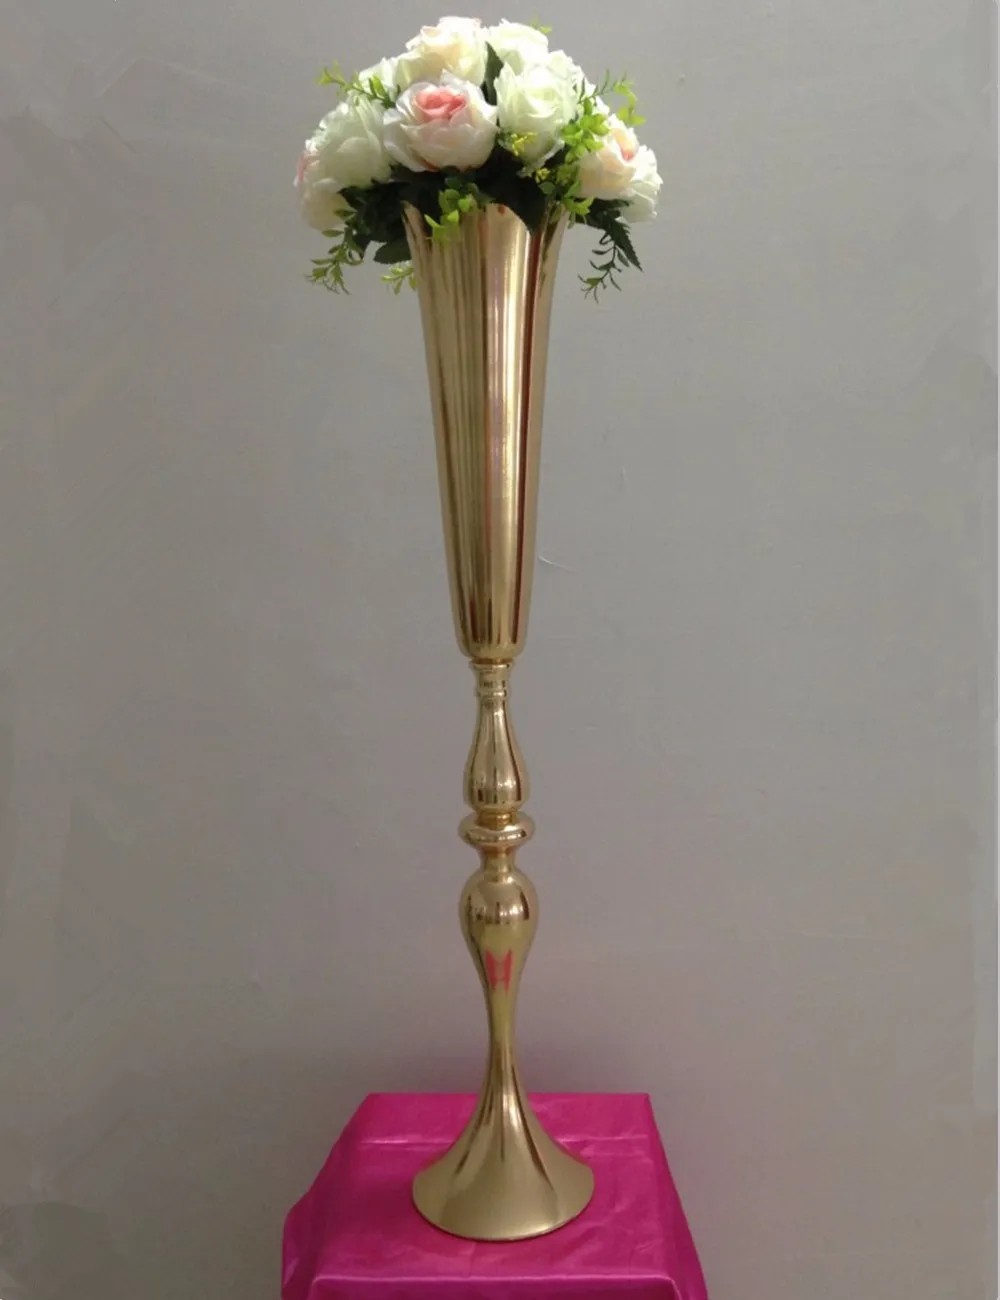 2019 Royal Gold Silver Wysoki Duży Kwiat Wazon Tabela Ślub Centerpieces Decor Party Road Lead Flower Holder Metal Kwiat Stojak na Diy Event